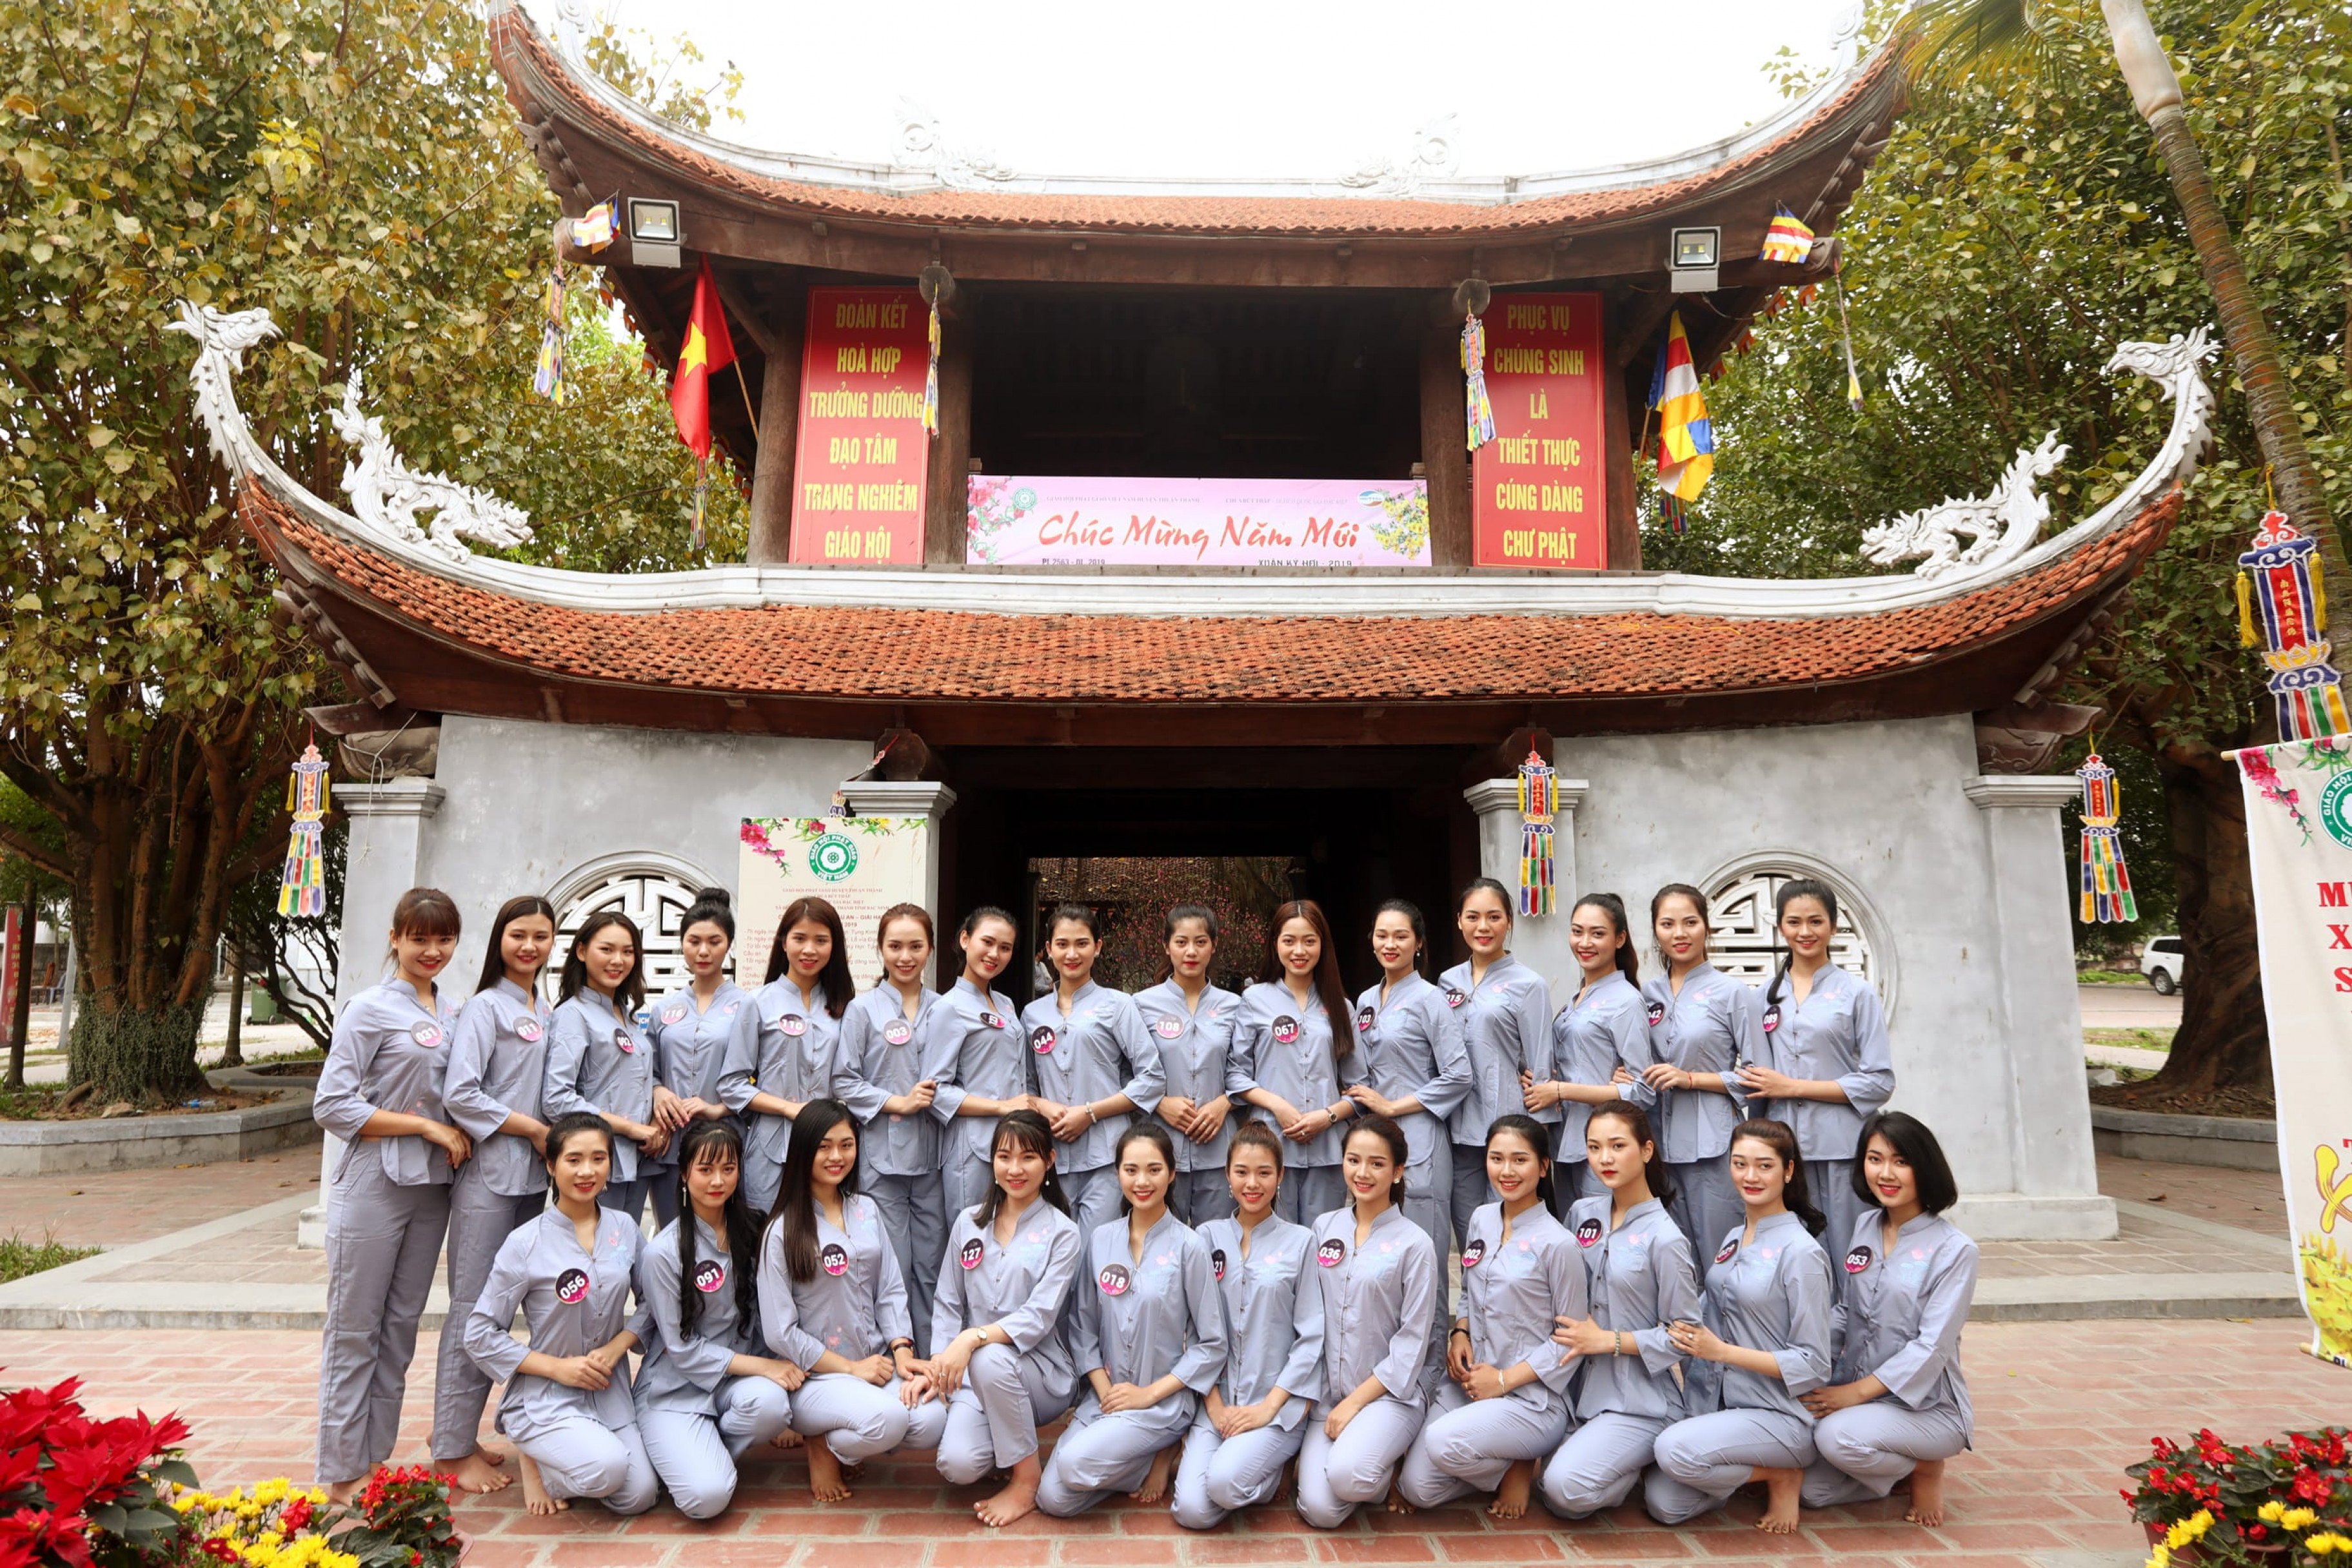 Chùa Bút Tháp (hay còn gọi là chùa Nhạn Tháp) là một thắng cảnh nổi tiếng của Bắc Ninh. Là một địa điểm du lịch tâm linh được nhiều người yêu thích khi đến với vùng đất đậm giá trị văn hóa này.